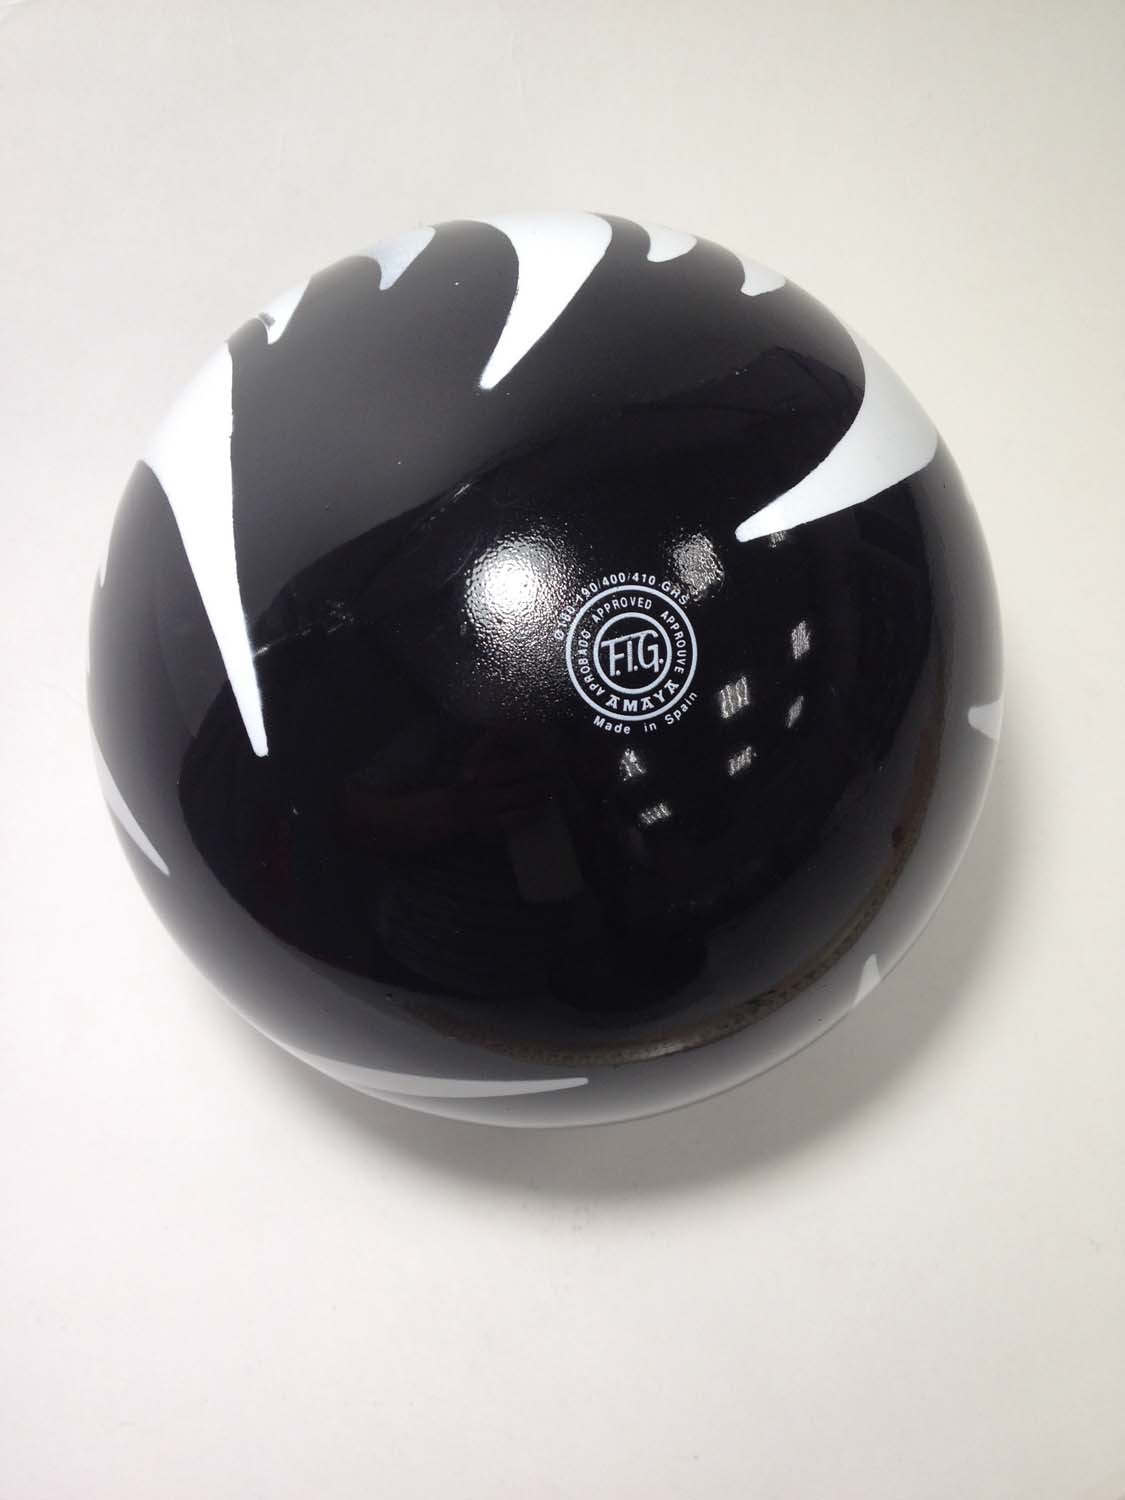 Мяч AMAYA 18,5 см мраморный черный для художественной гимнастики– купить в  интернет-магазине, цена, заказ online